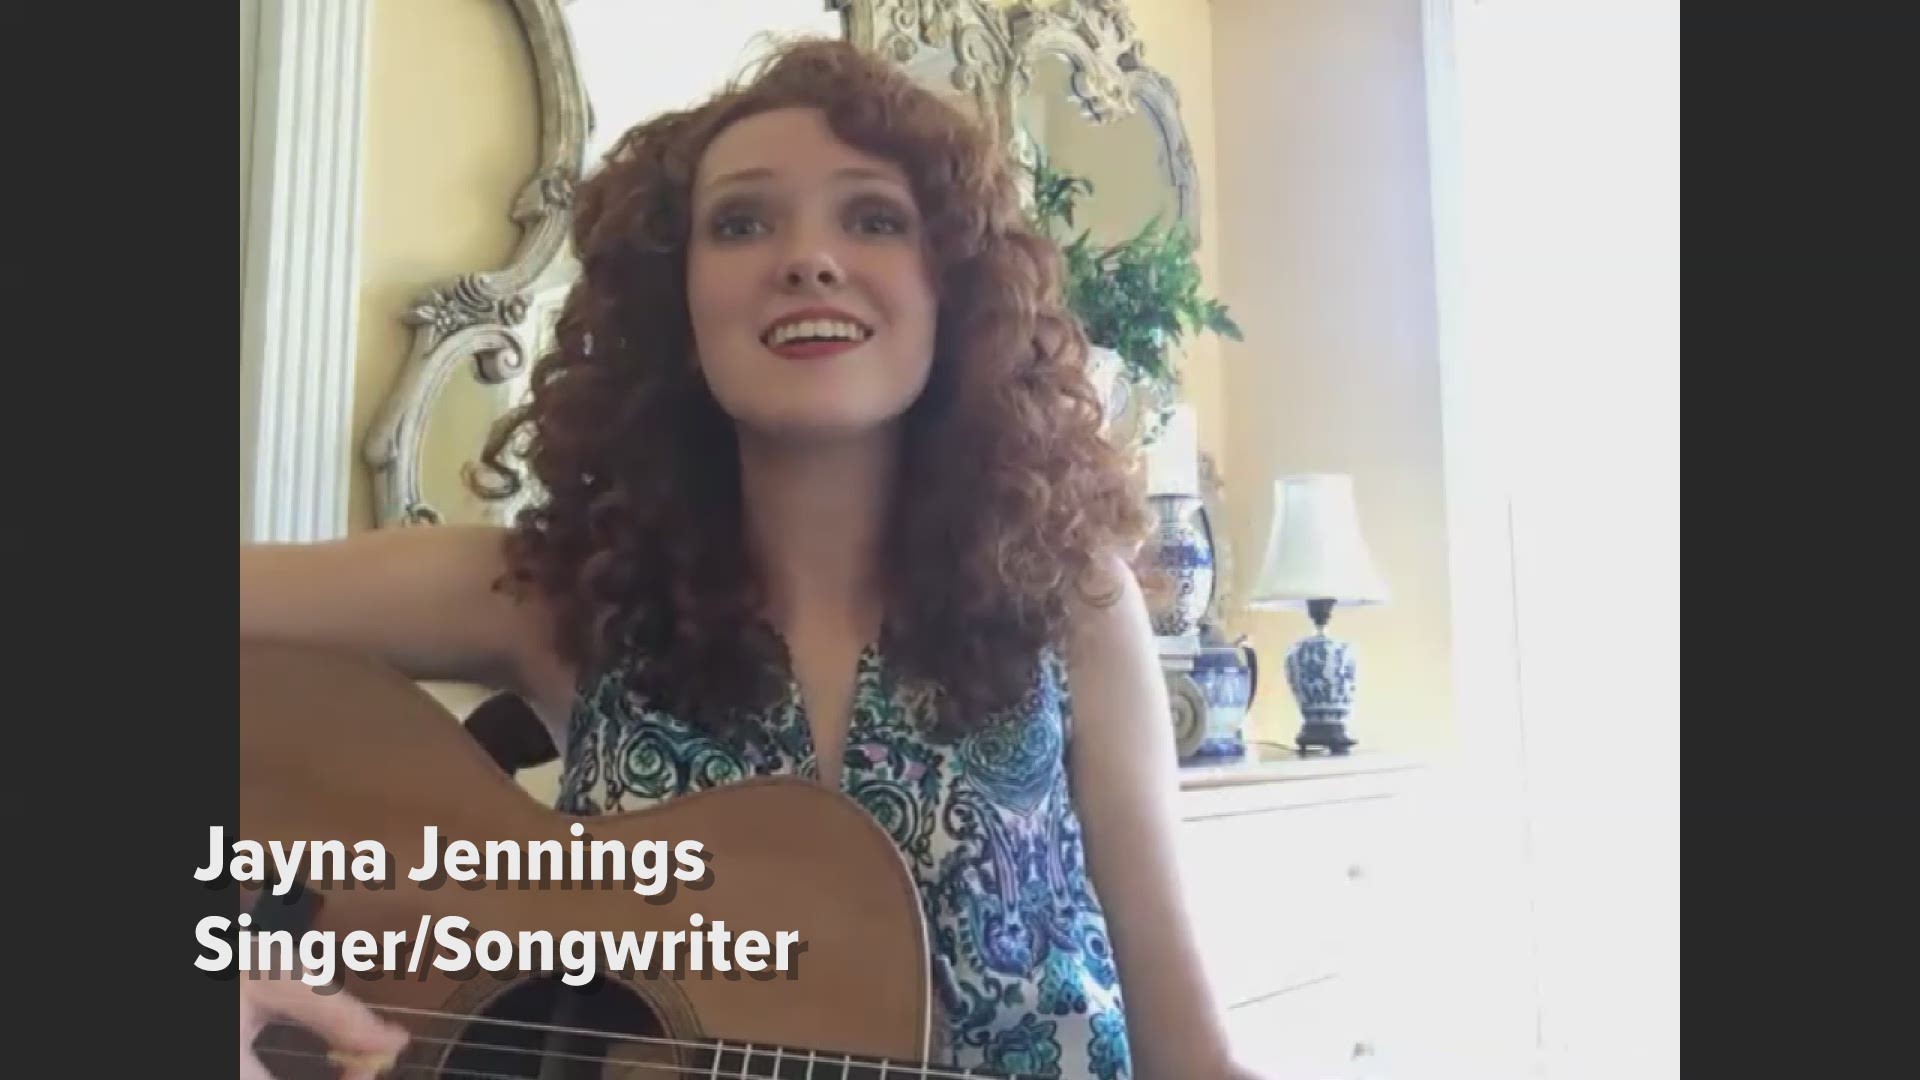 Singer Songwriter Jayna Jennings Nominated For 5 Music Awards